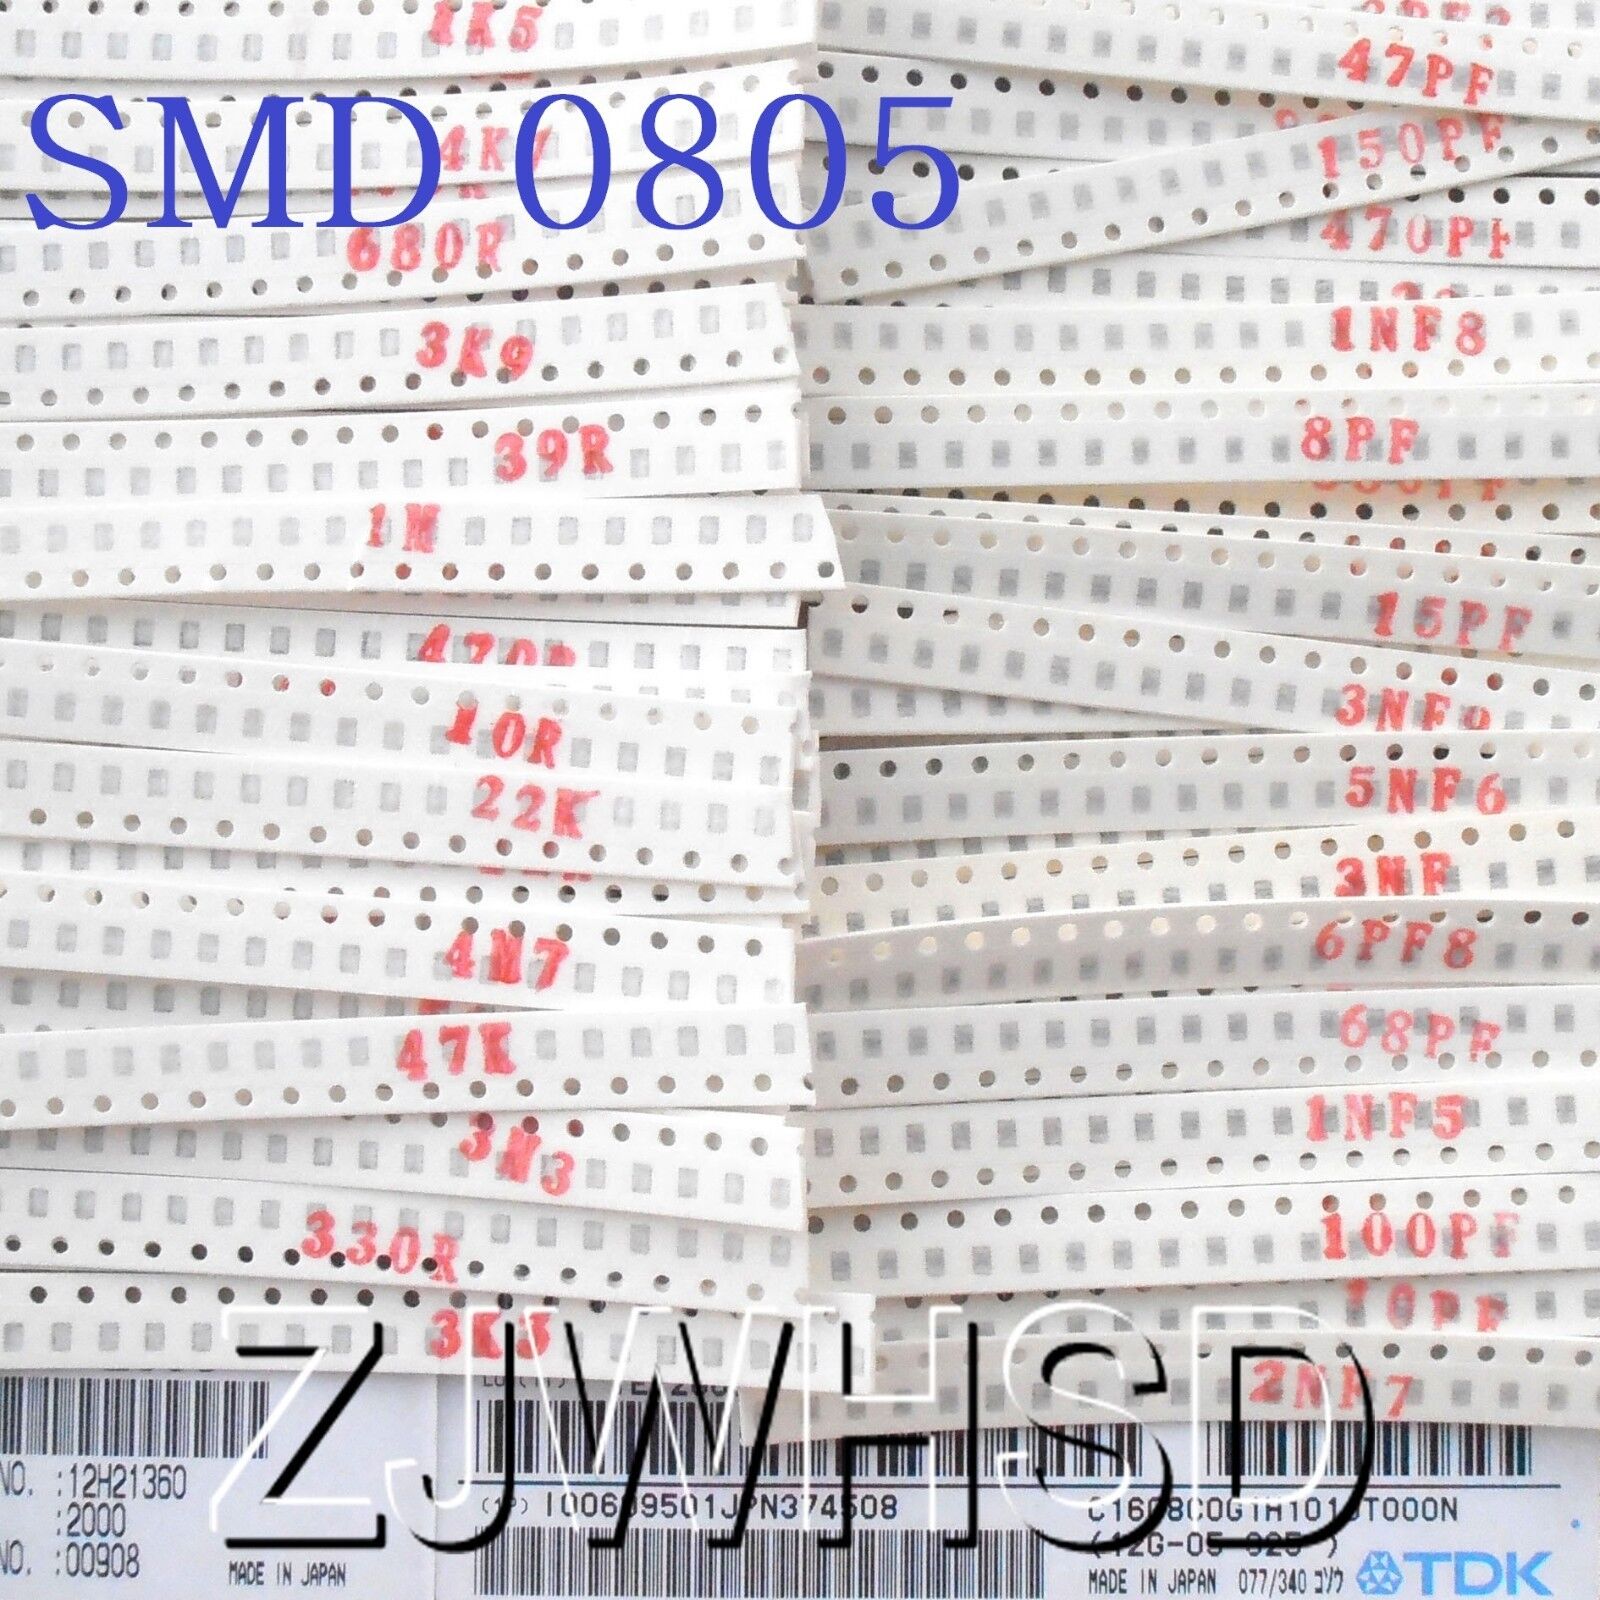 2300pcs SMD 0805 (0Ω-10MΩ)50value Resistor +(2.2pf-1uf)40value Capacitor Kit Set